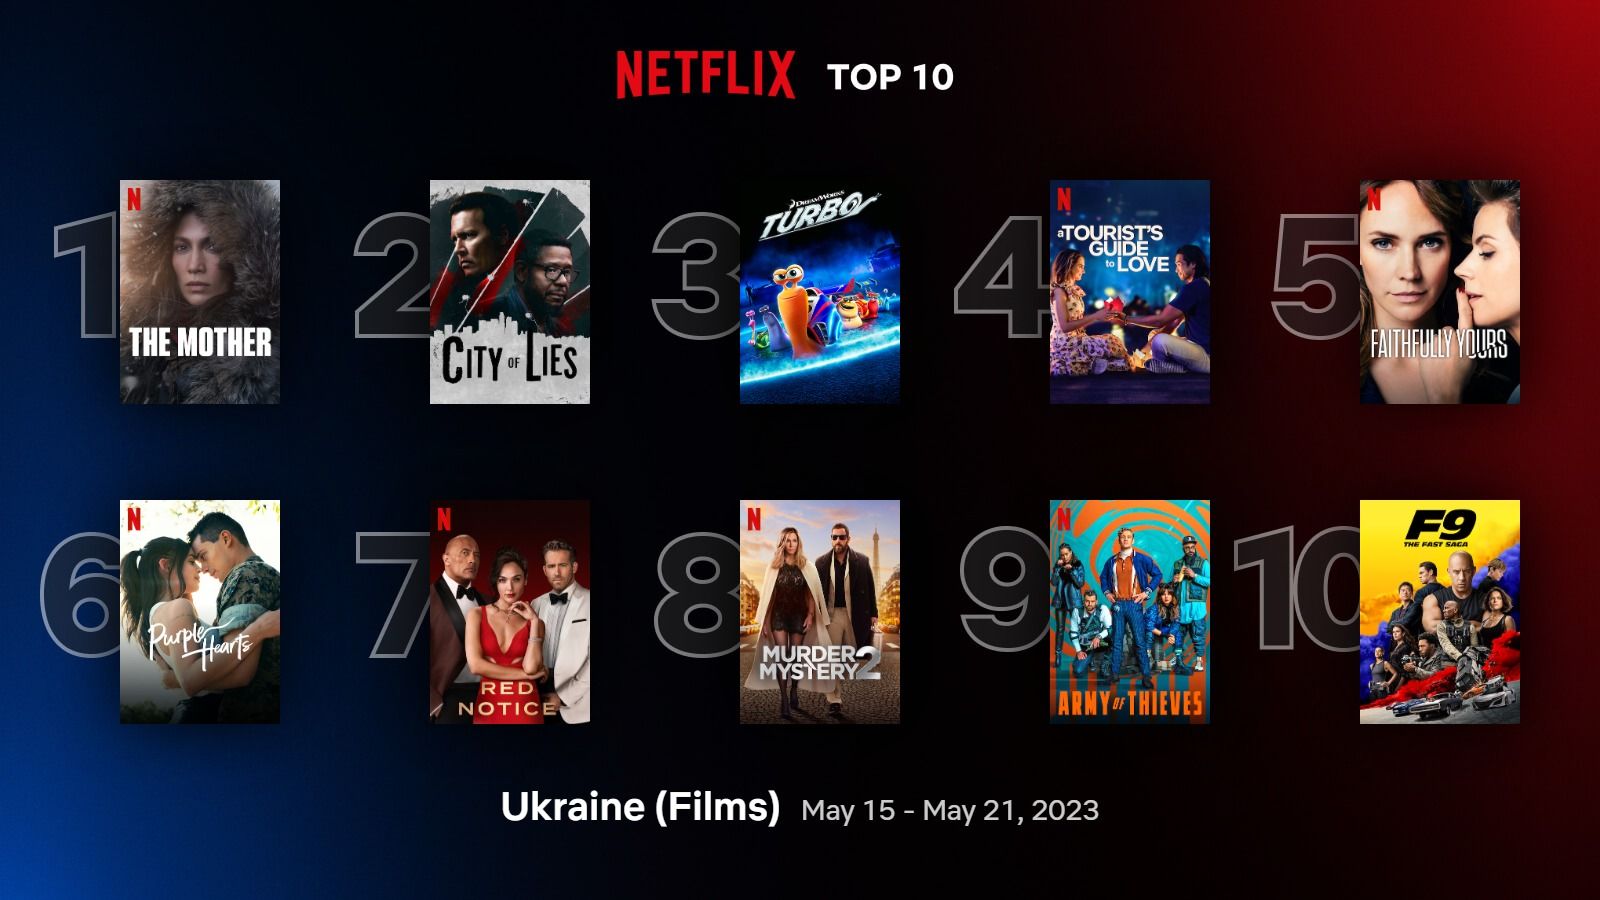 Найпопулярніші фільми і серіали Netflix, які найбільше переглядають в Україні – список